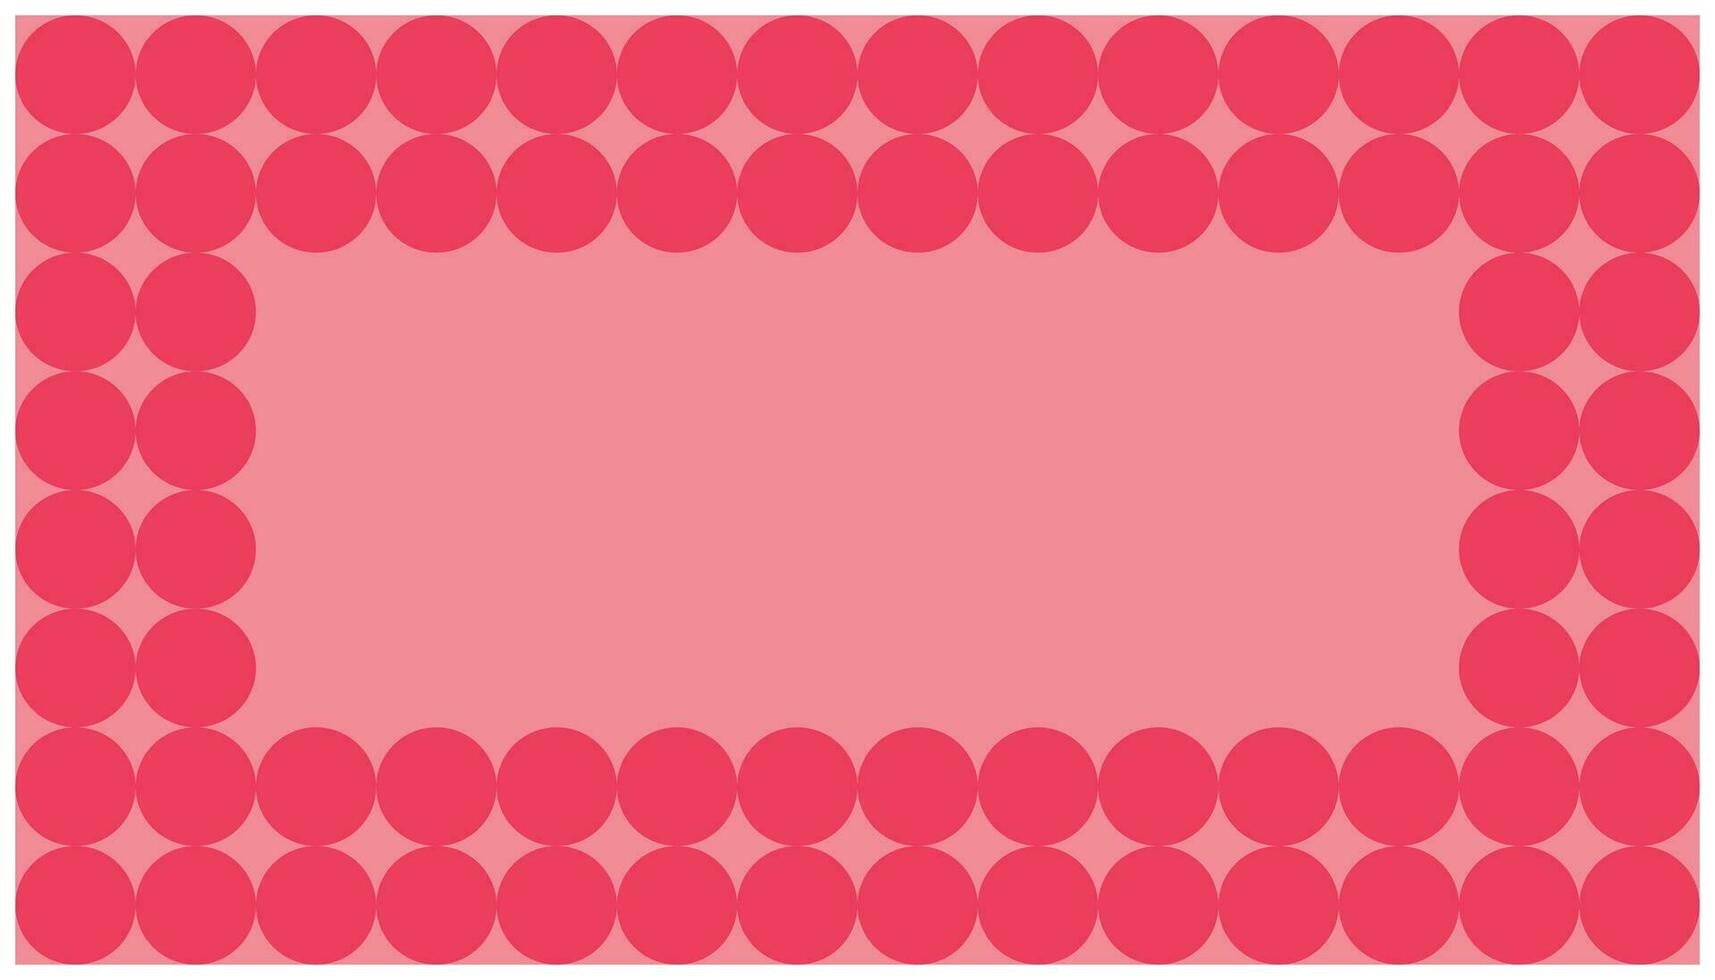 rosa polka punkt bakgrund. abstrakt bakgrund med cirklar i rosa och röd färger. vektor illustration.